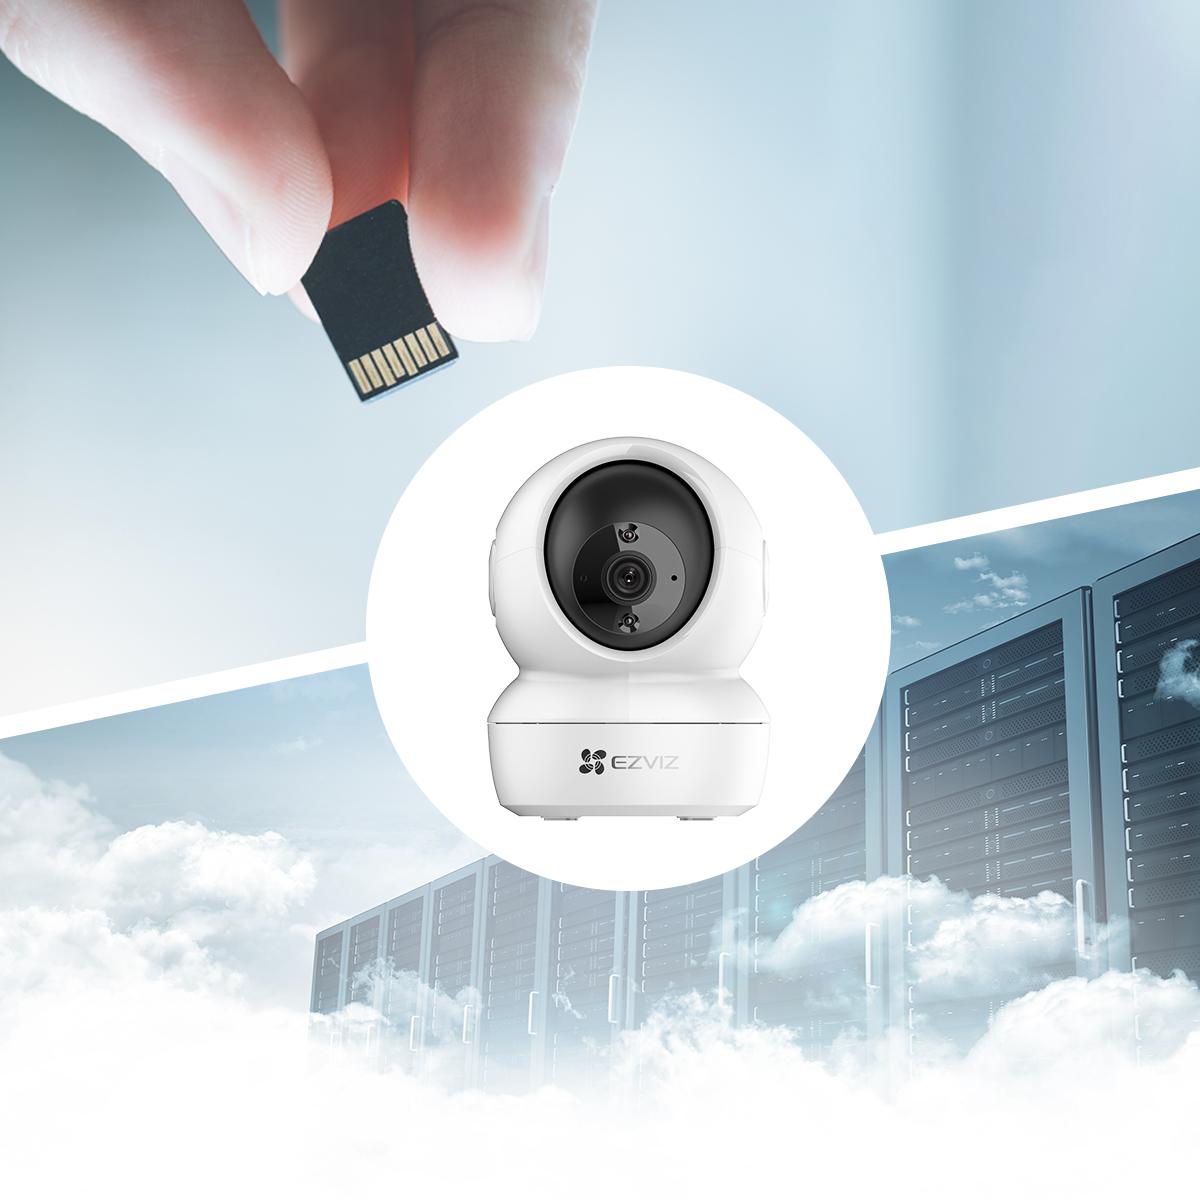 Zamień kamerę monitorującą Wi-Fi EZVIZ H6c 2MPx w Twój cyfrowy pamiętnik zawierający wszystkie niezapomniane i ważne momenty!